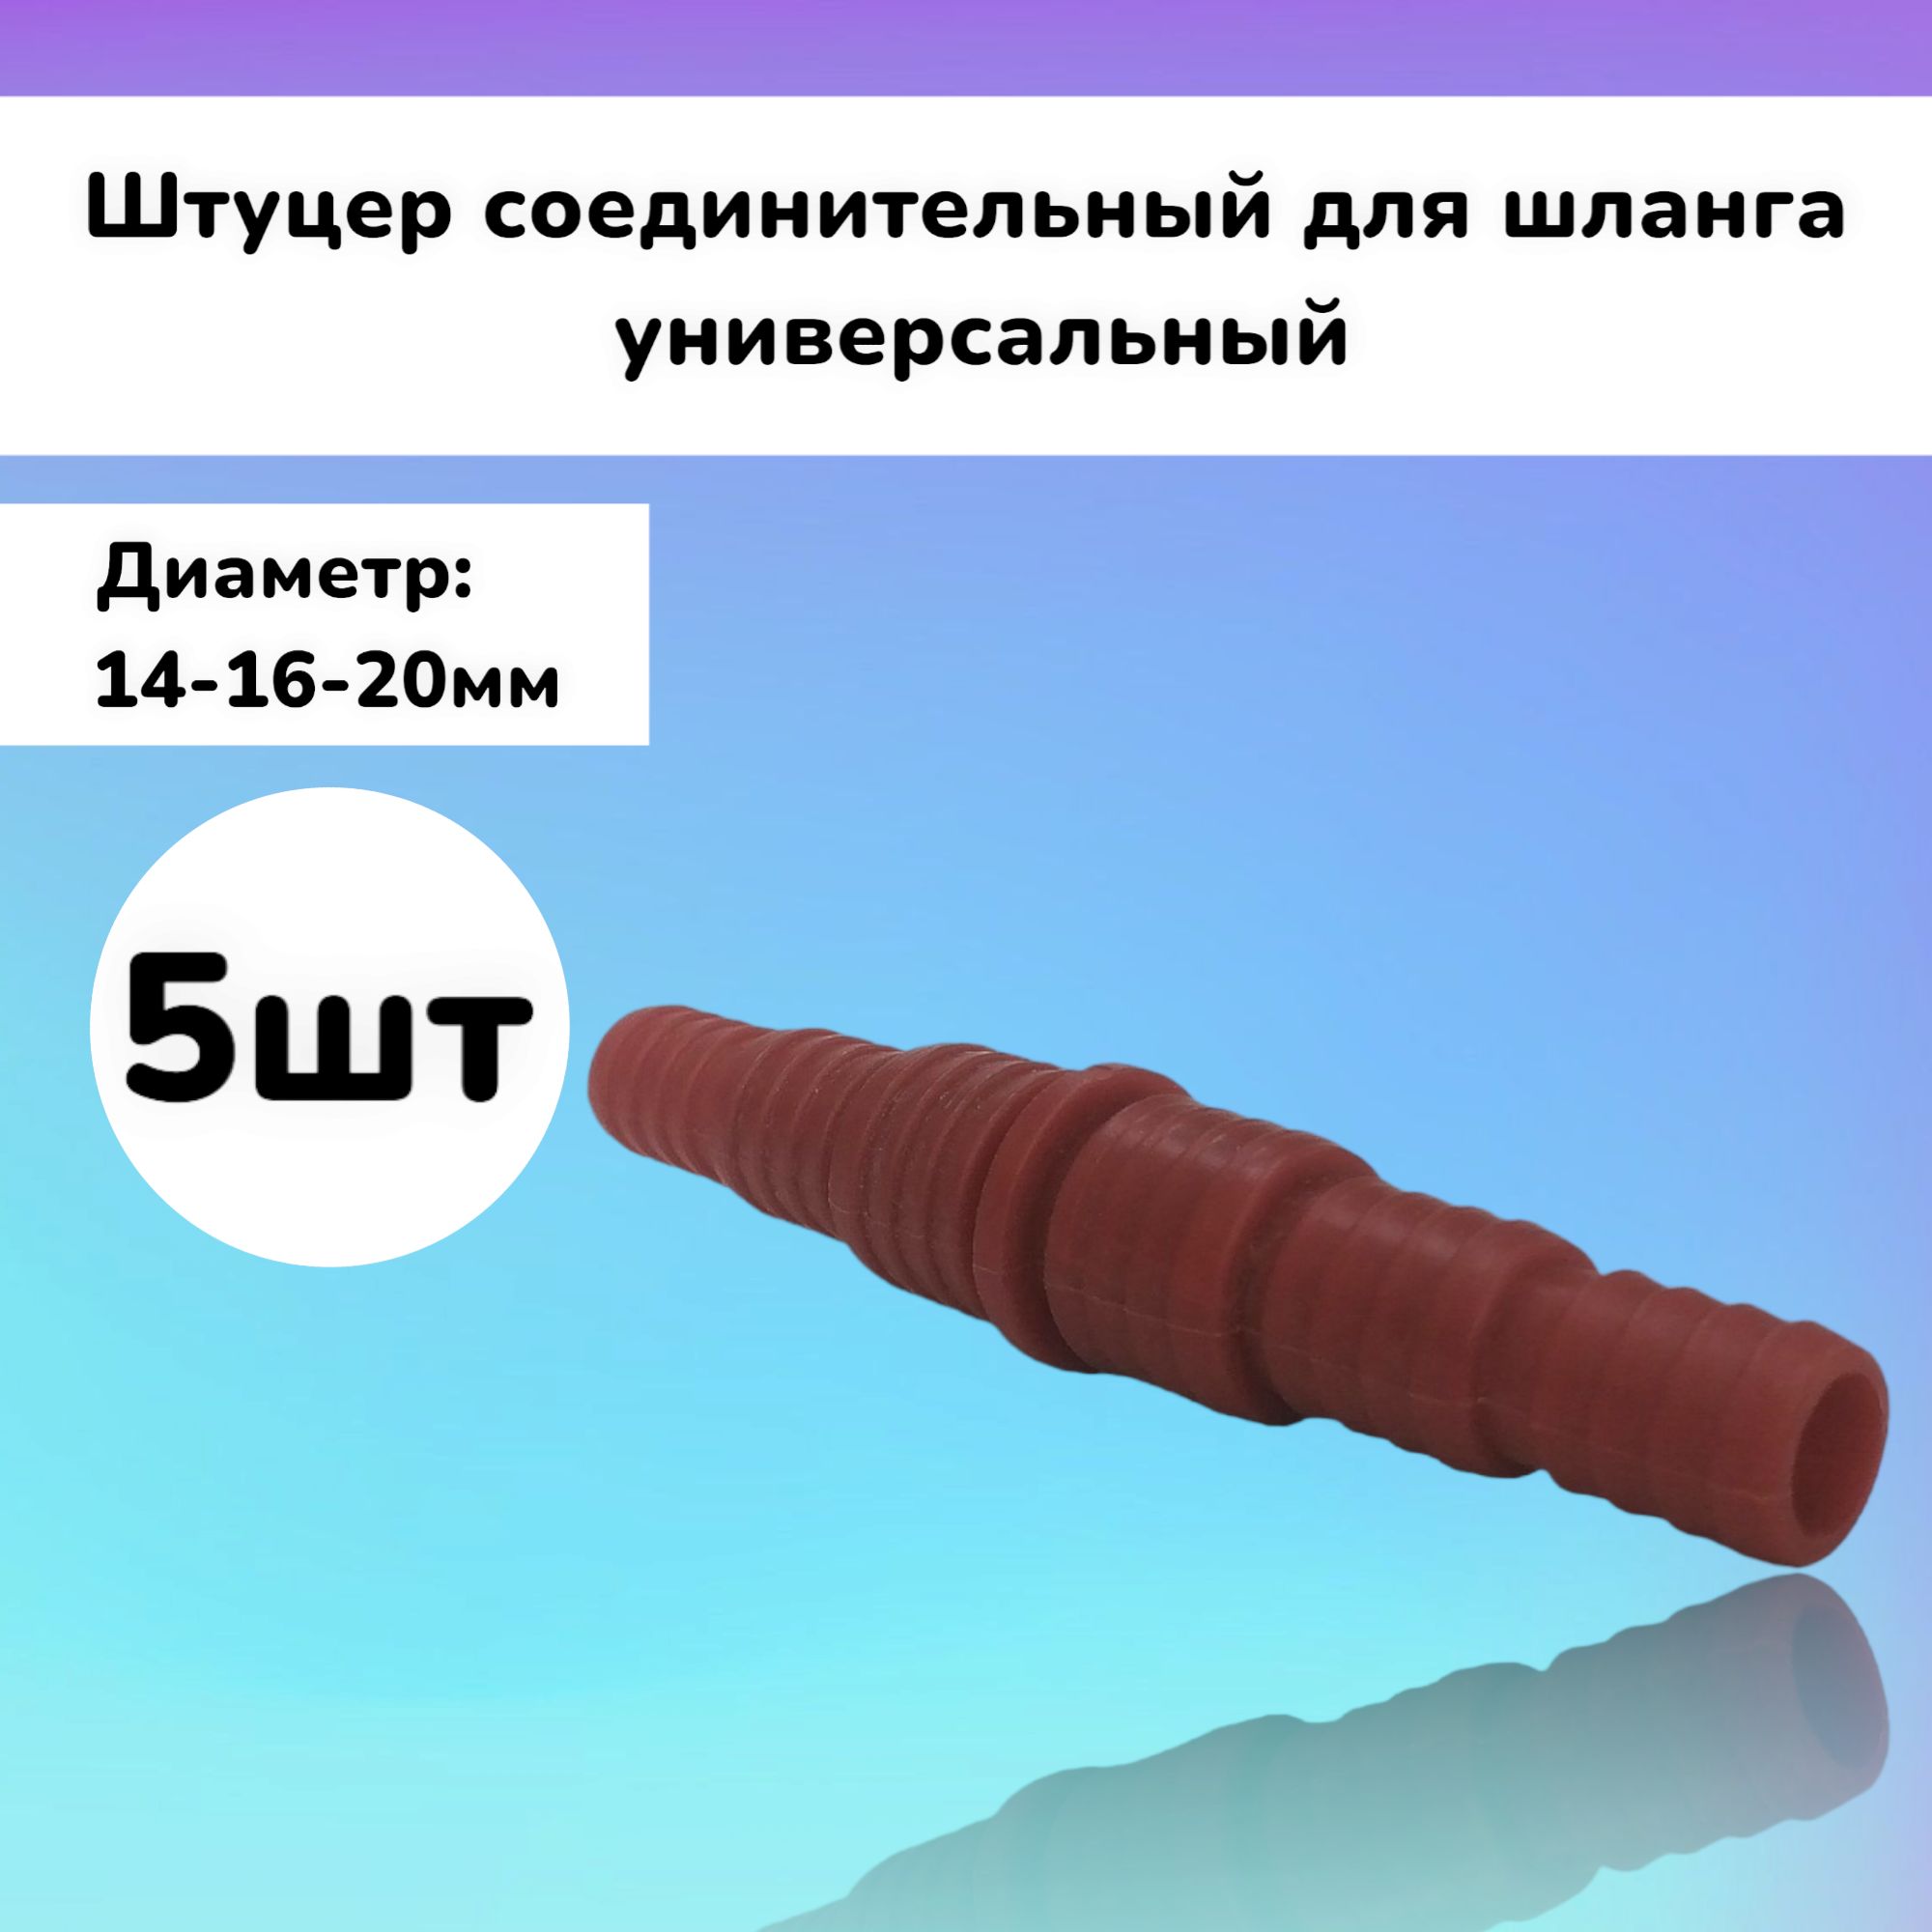 Штуцер5штсоединительный(14-16-20мм)дляшлангауниверсальный1/2"